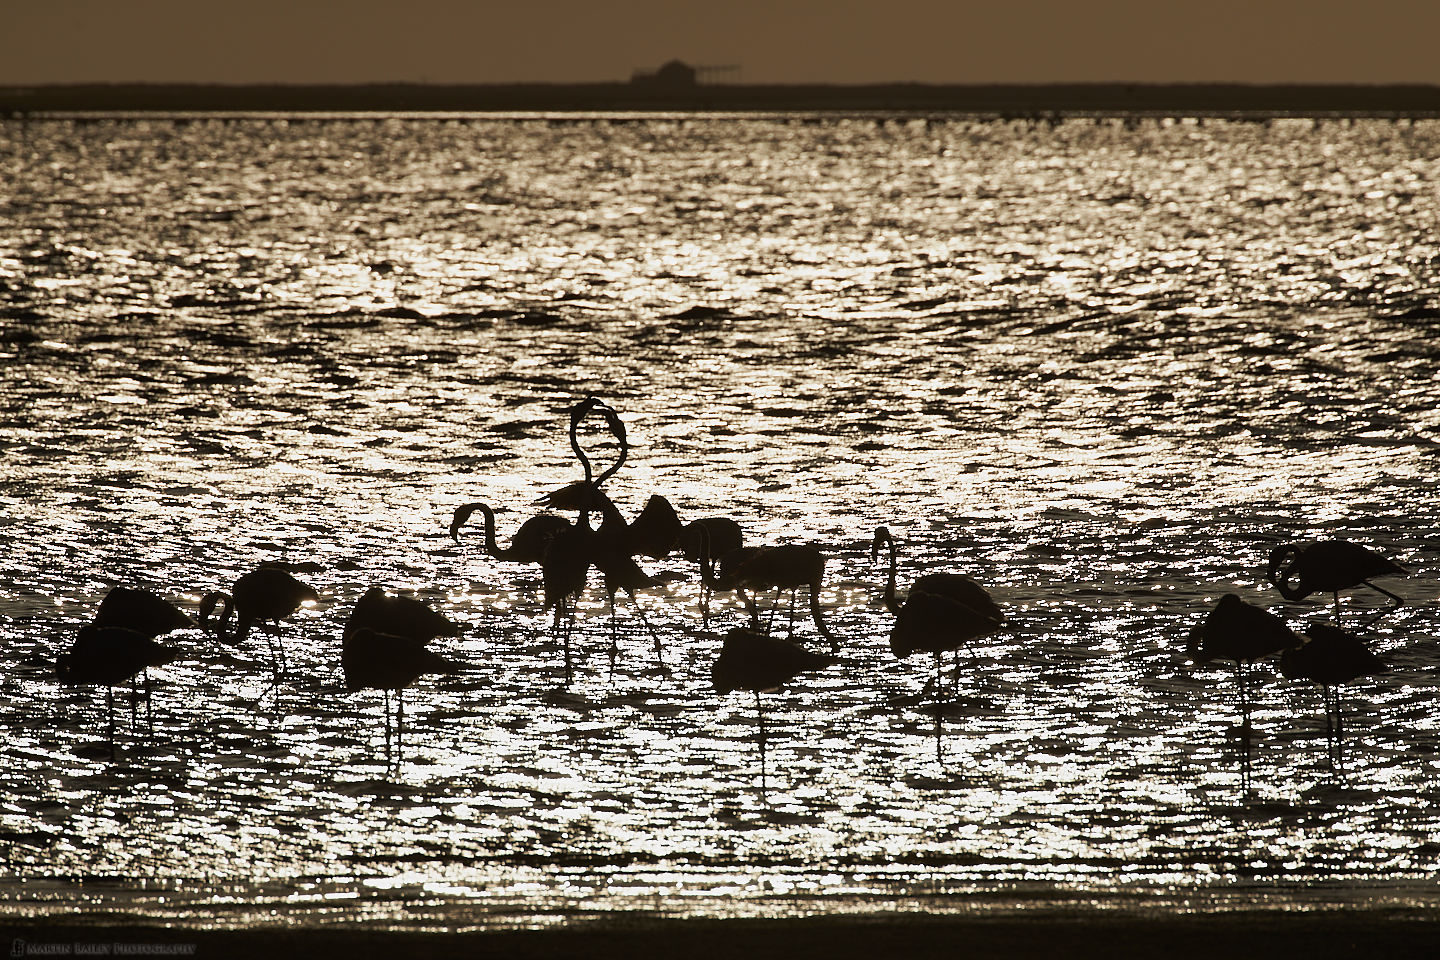 Flamingoes at Sunset